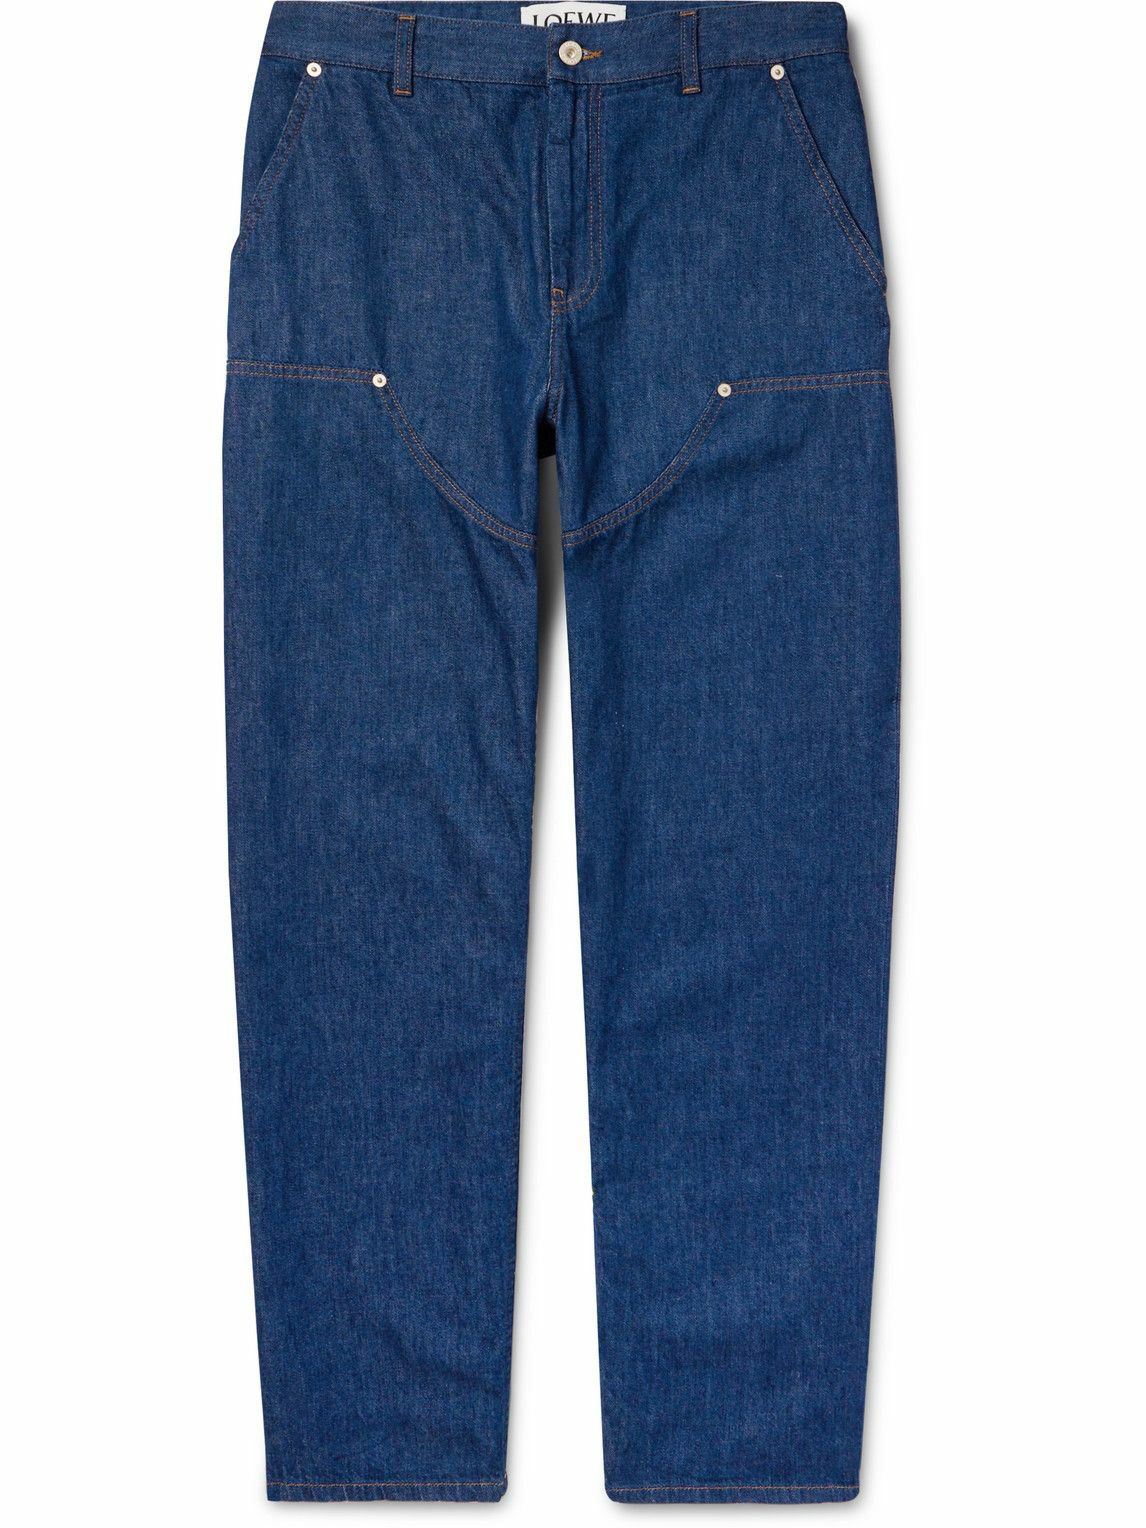 Loewe - Painter Straight-Leg Debossed Leather-Trimmed Jeans - Blue Loewe